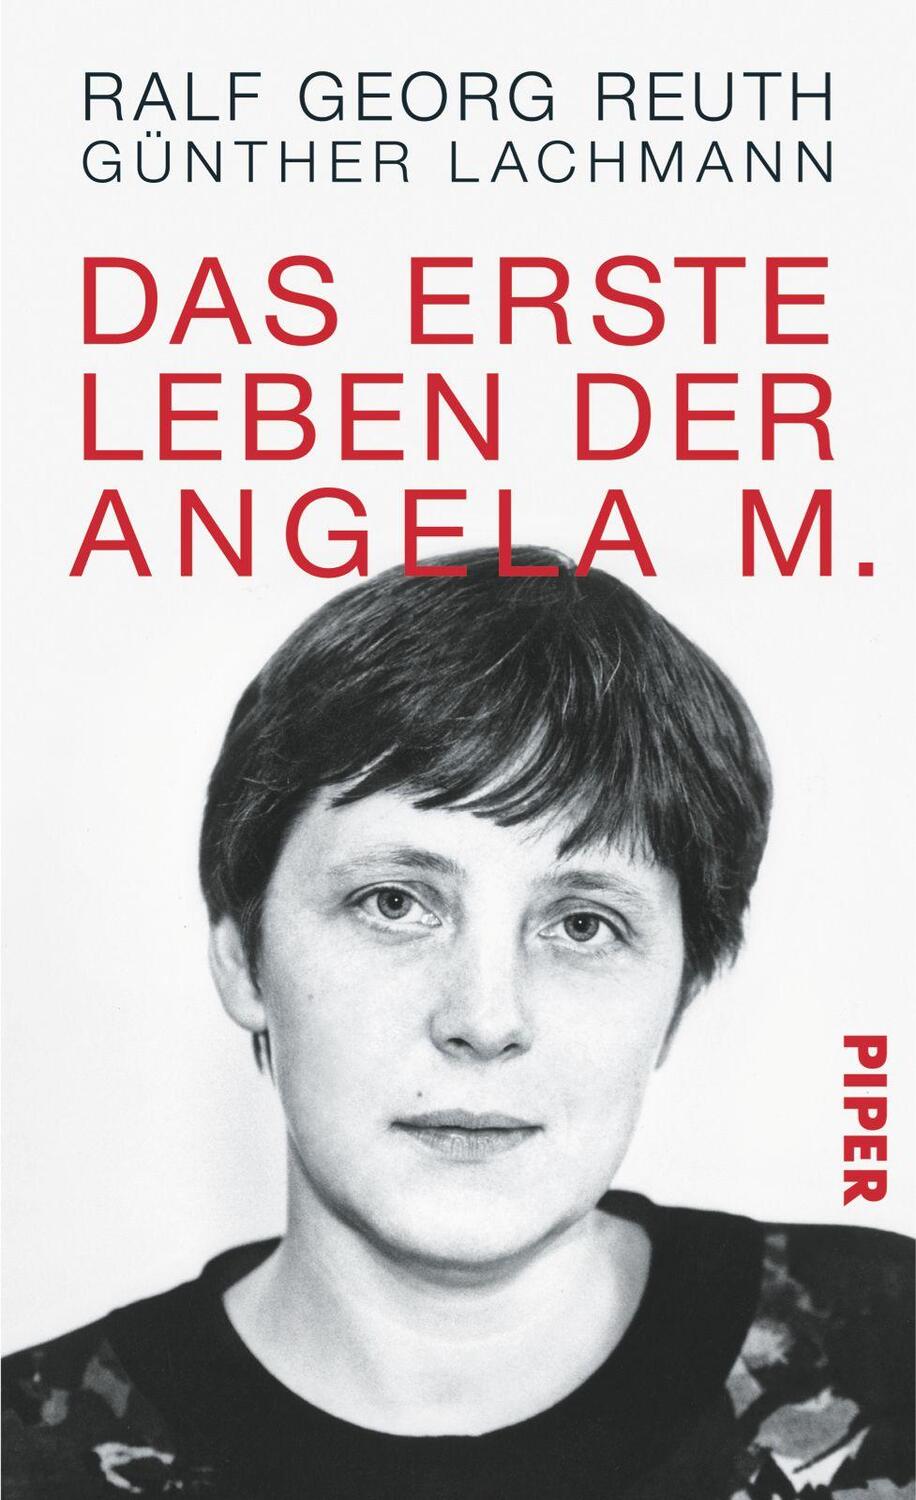 Das erste Leben der Angela M. - Reuth, Ralf Georg